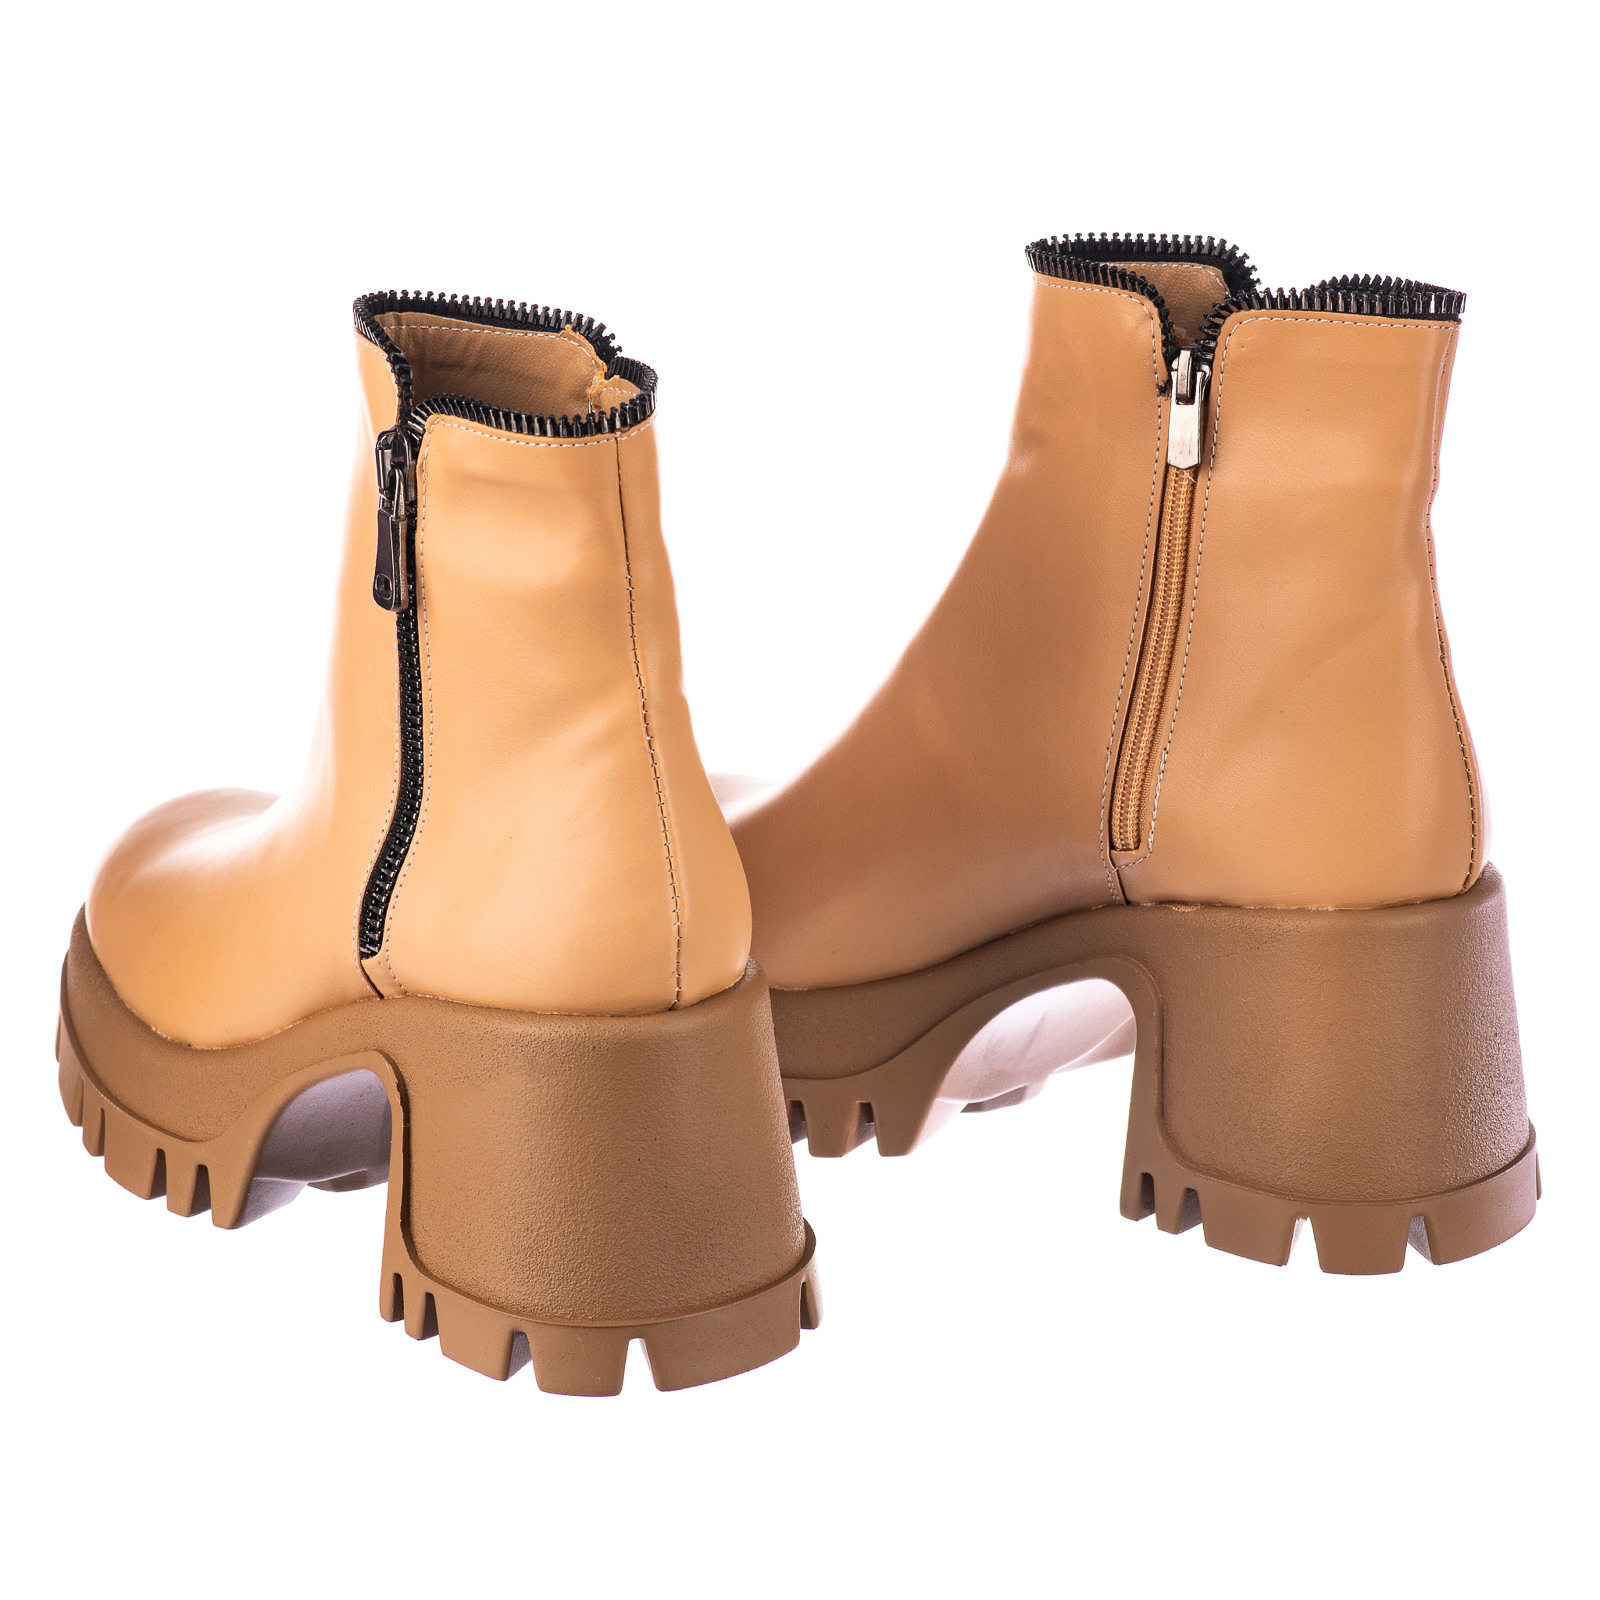 Women ankle boots B712 - BEIGE